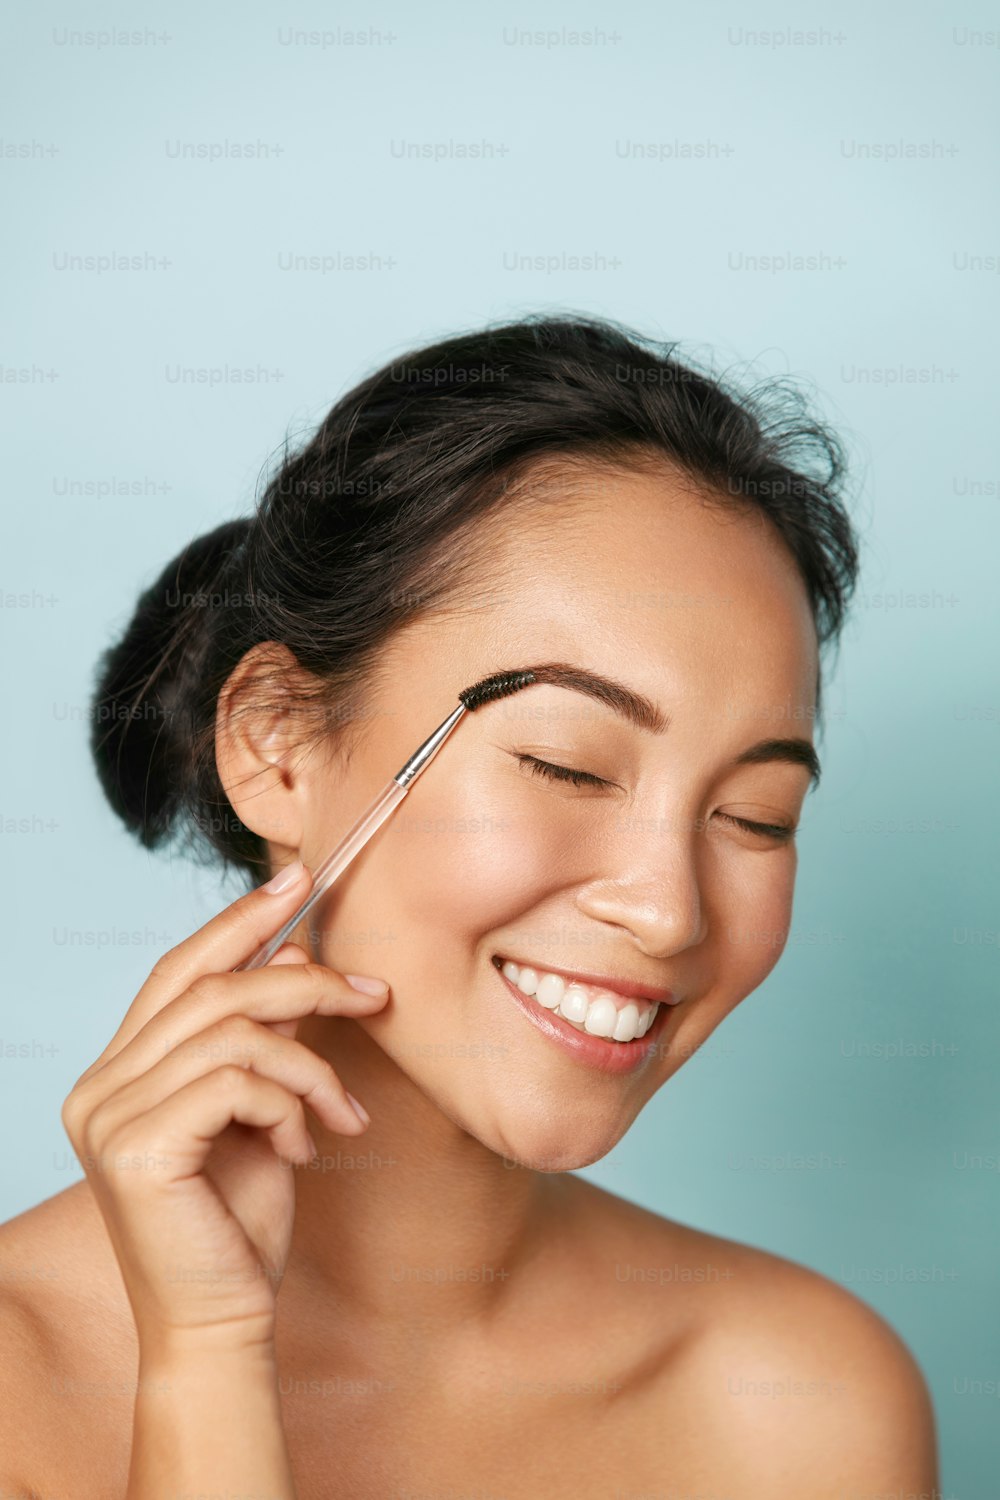 Belleza. Mujer sonriente cepillando las cejas con primer plano del pincel de maquillaje. Retrato de una hermosa modelo asiática feliz maquillándose, dando forma a las cejas con un pincel cosmético en el estudio.